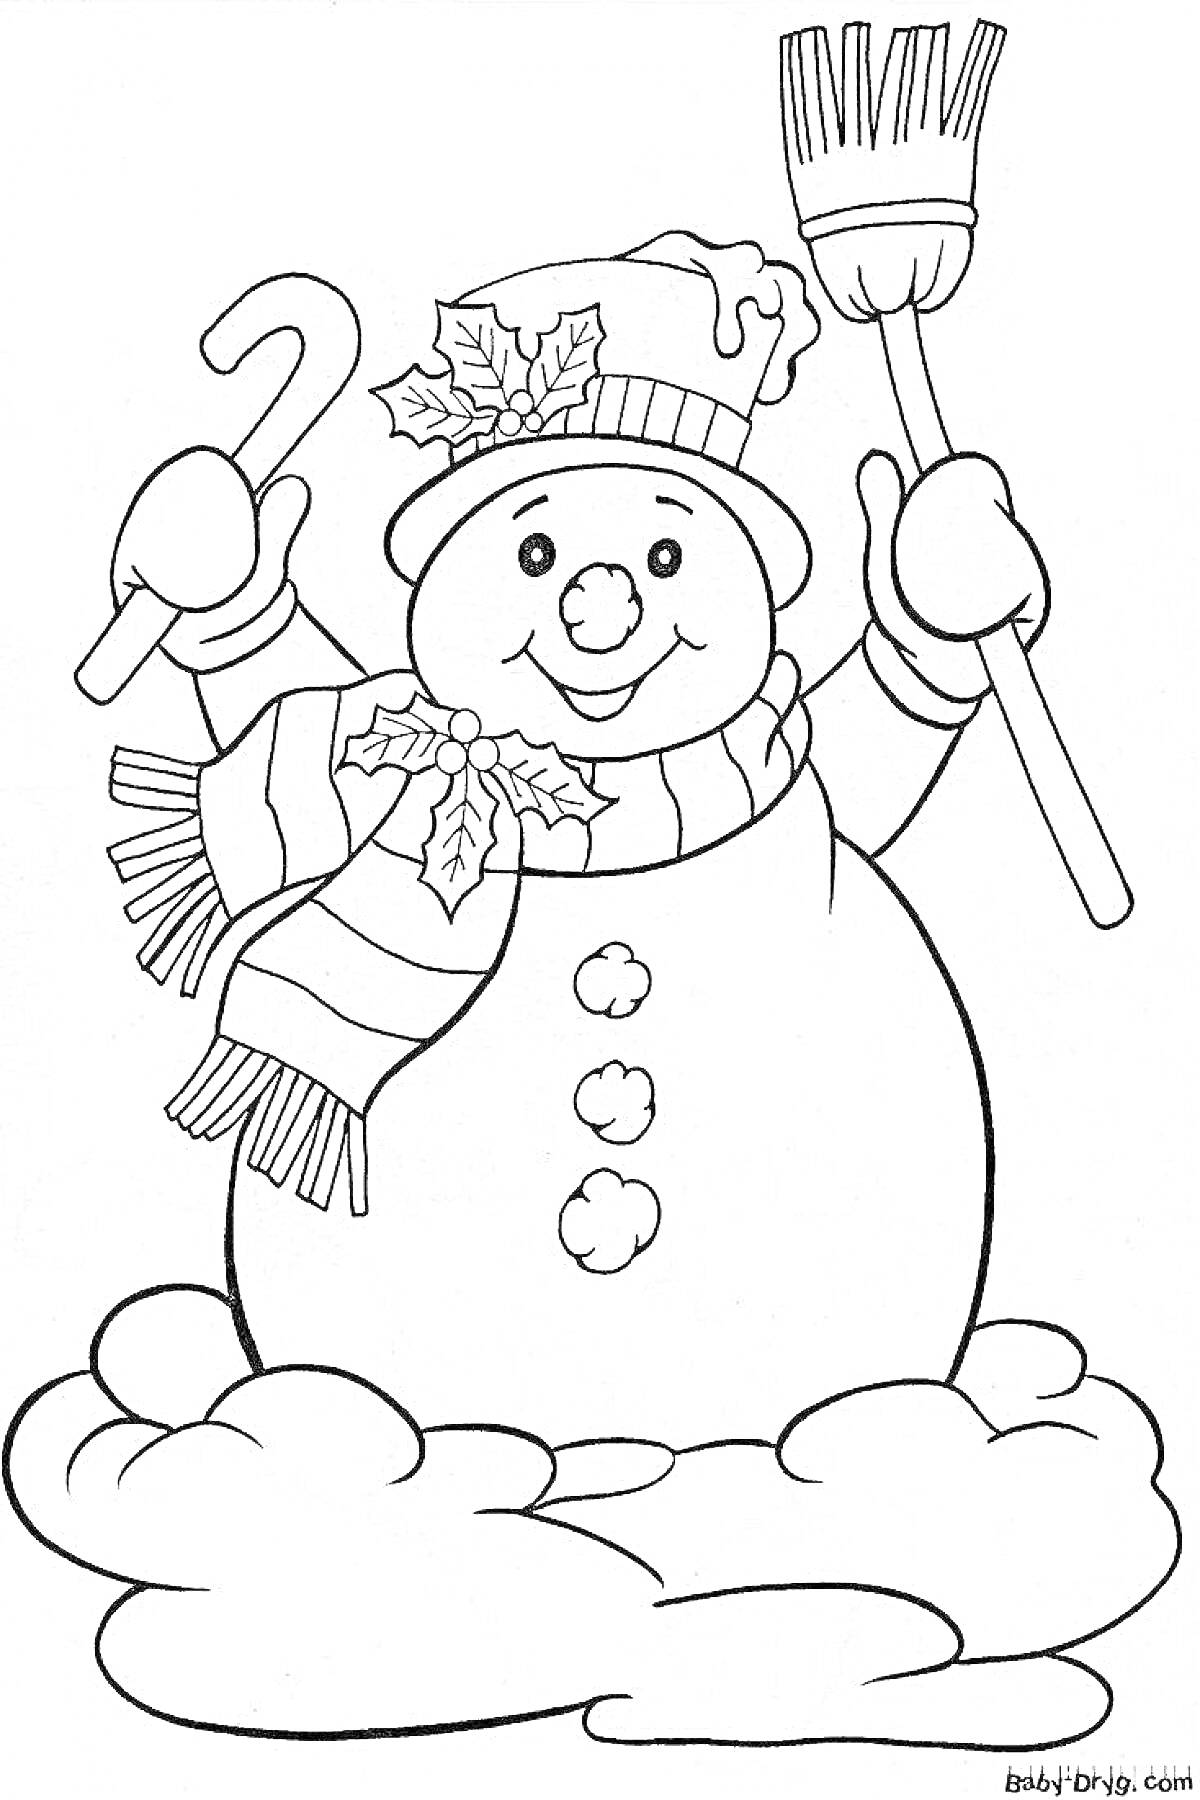 Раскраска Снеговичок с метлой и леденцом, в шапке с лоскутами патефогонного листа и шарфе, стоящий на облаке снега